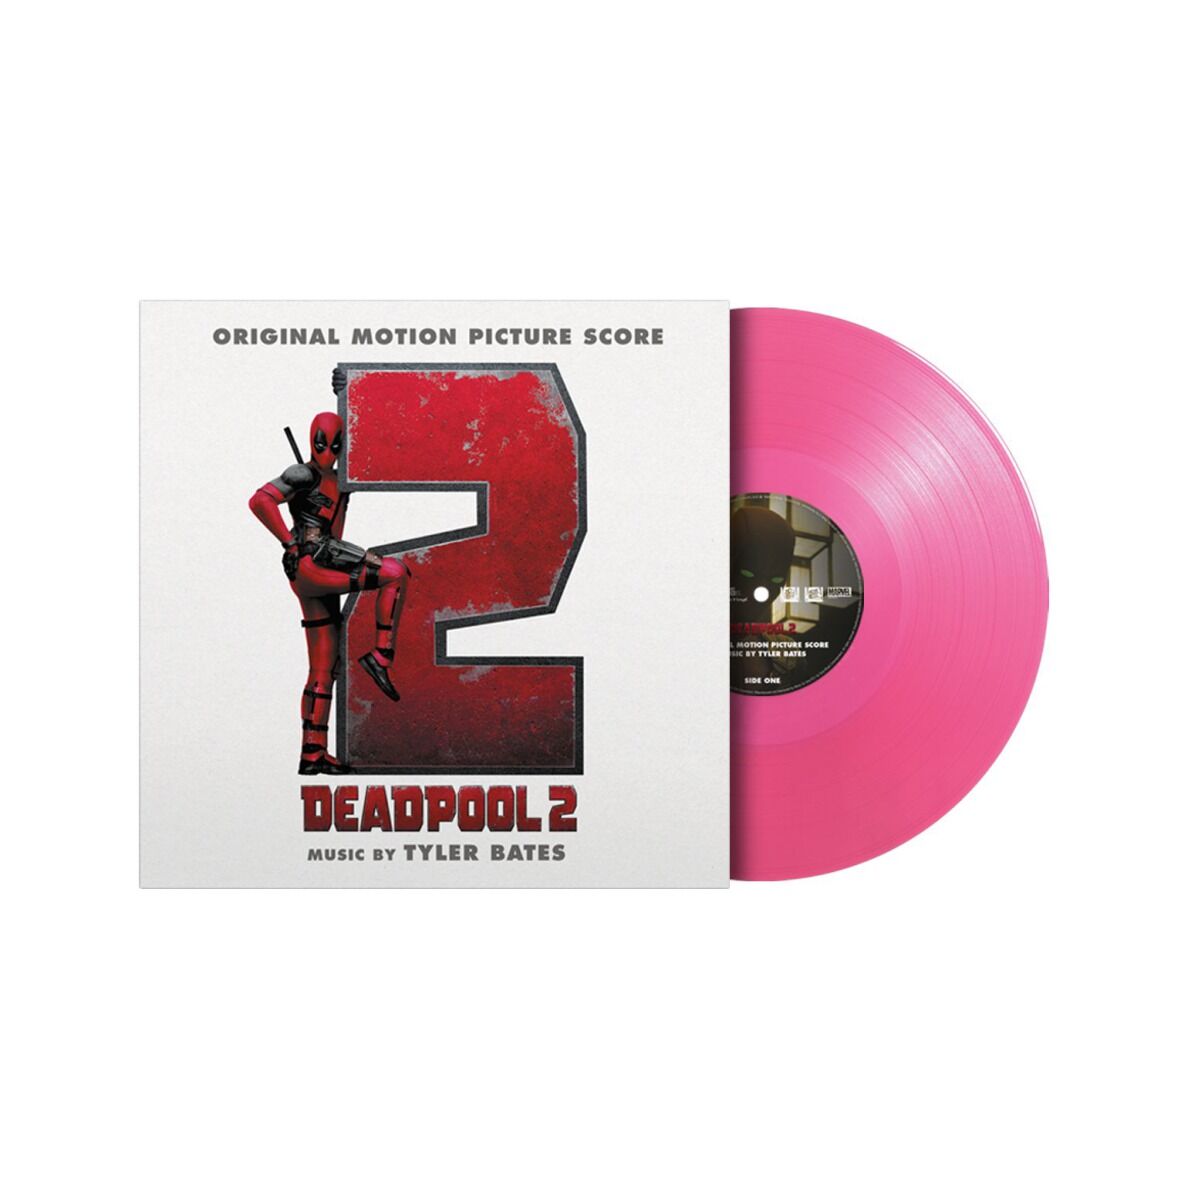 Soundtrack Vinyl Deadpool 2 Original Motion Picture Score Pink Vinyl Rukahore Shop 